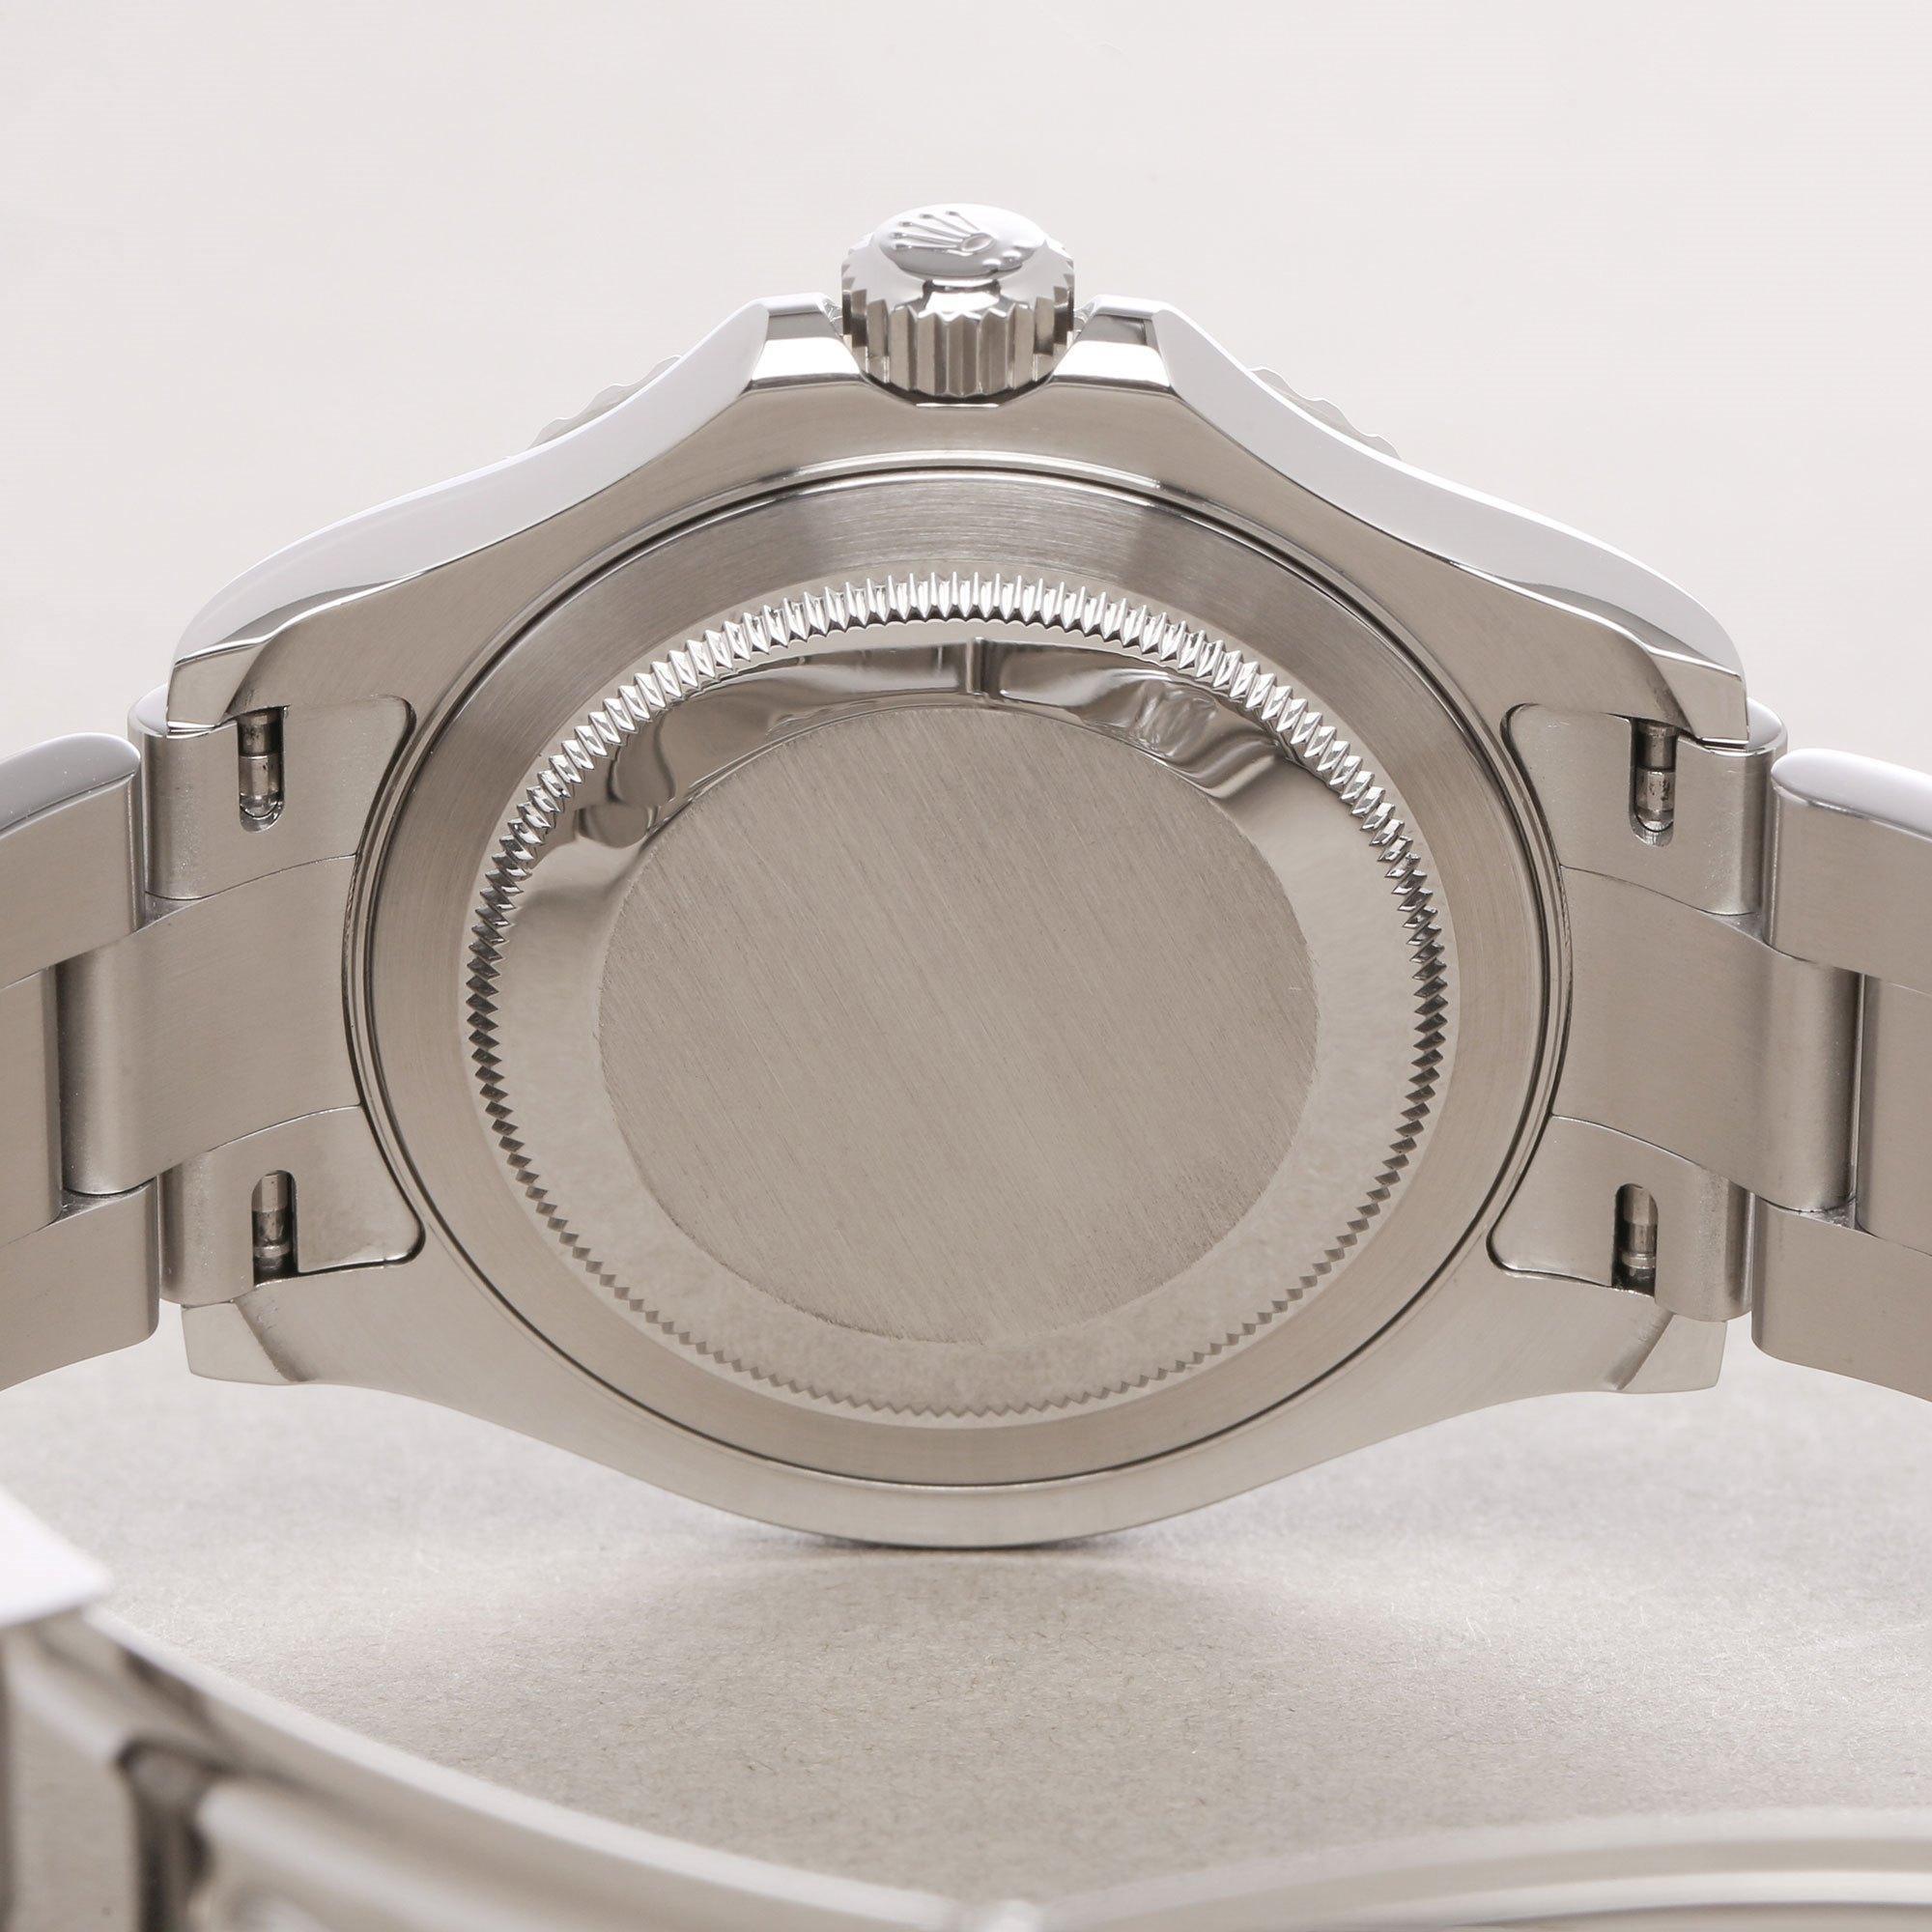 Rolex Yacht-Master 40 16622 Men's Stainless Steel Watch 2